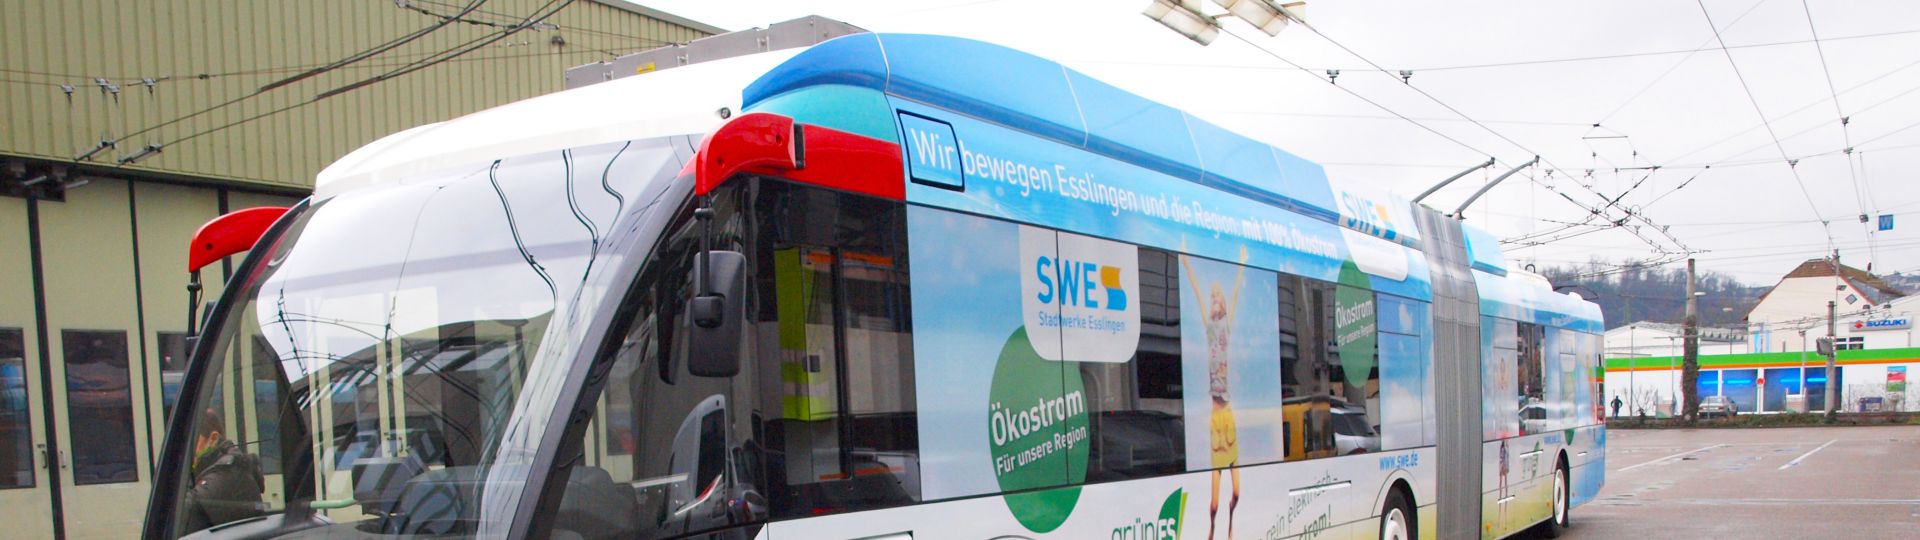 Innovative Solaris Trollino already on route in Esslingen, Germany